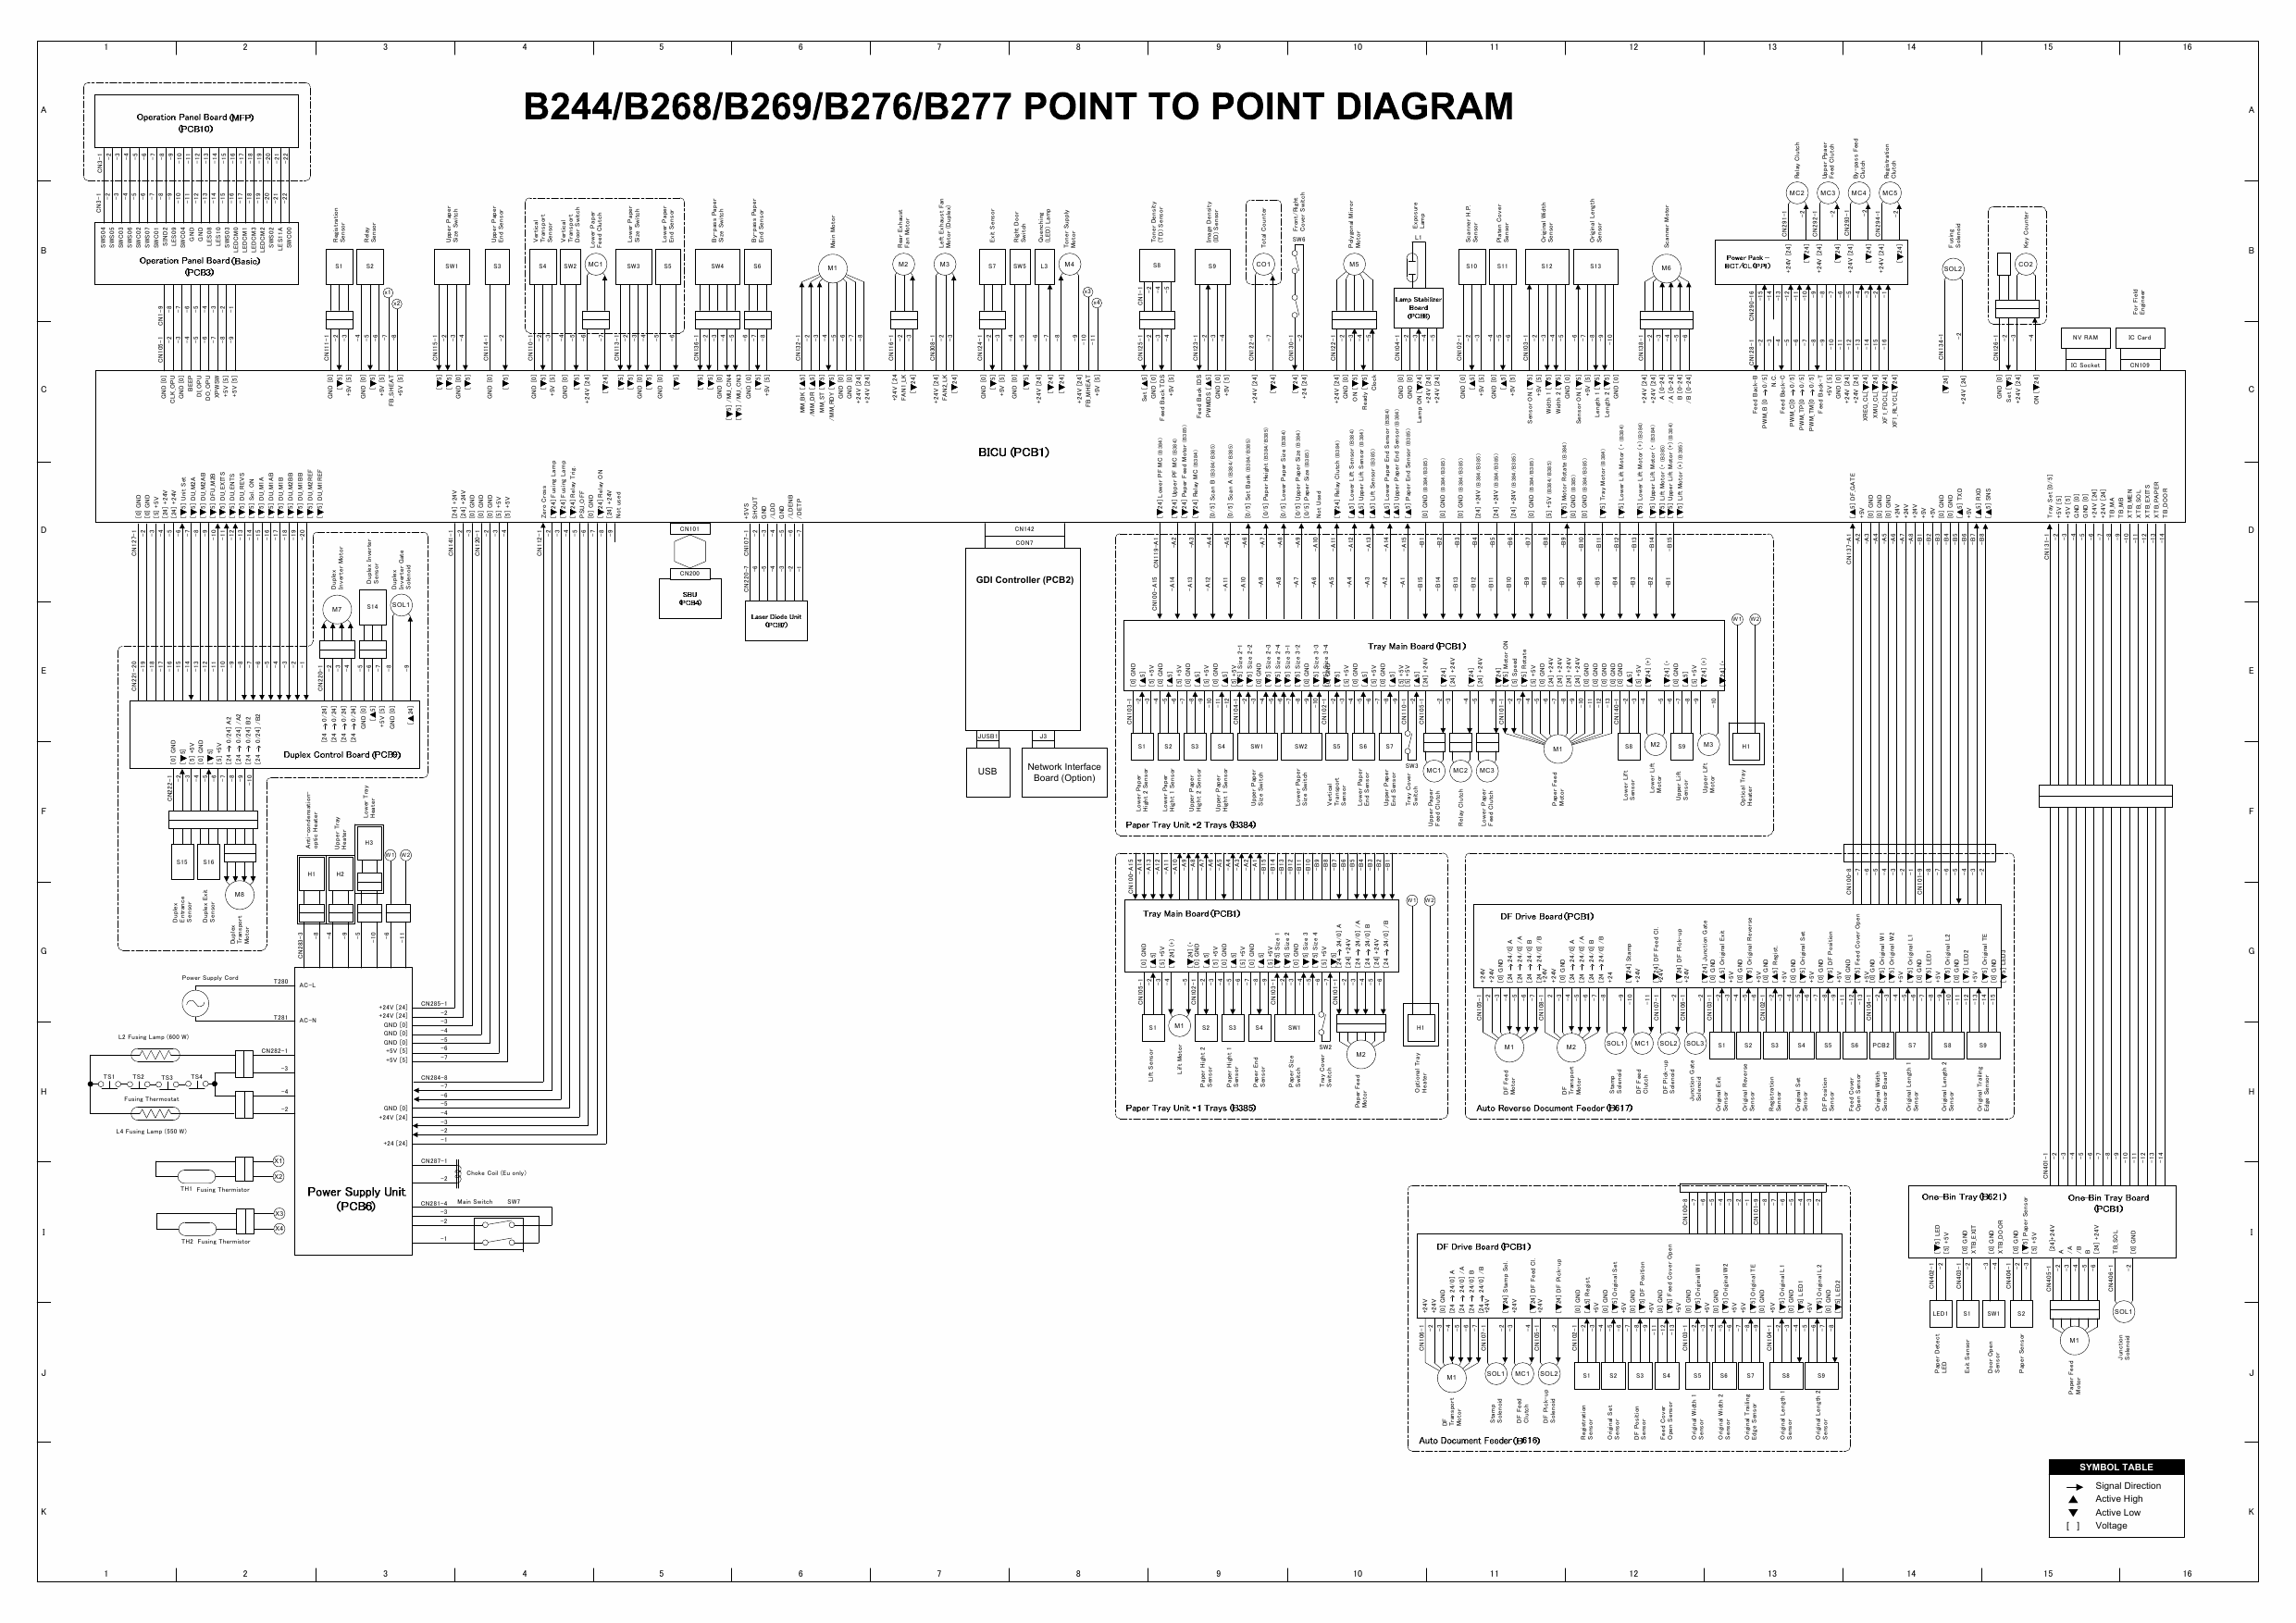 RICOH Aficio MP-1600L2 B244 B276 B277 B268 B269 Circuit Diagram-1